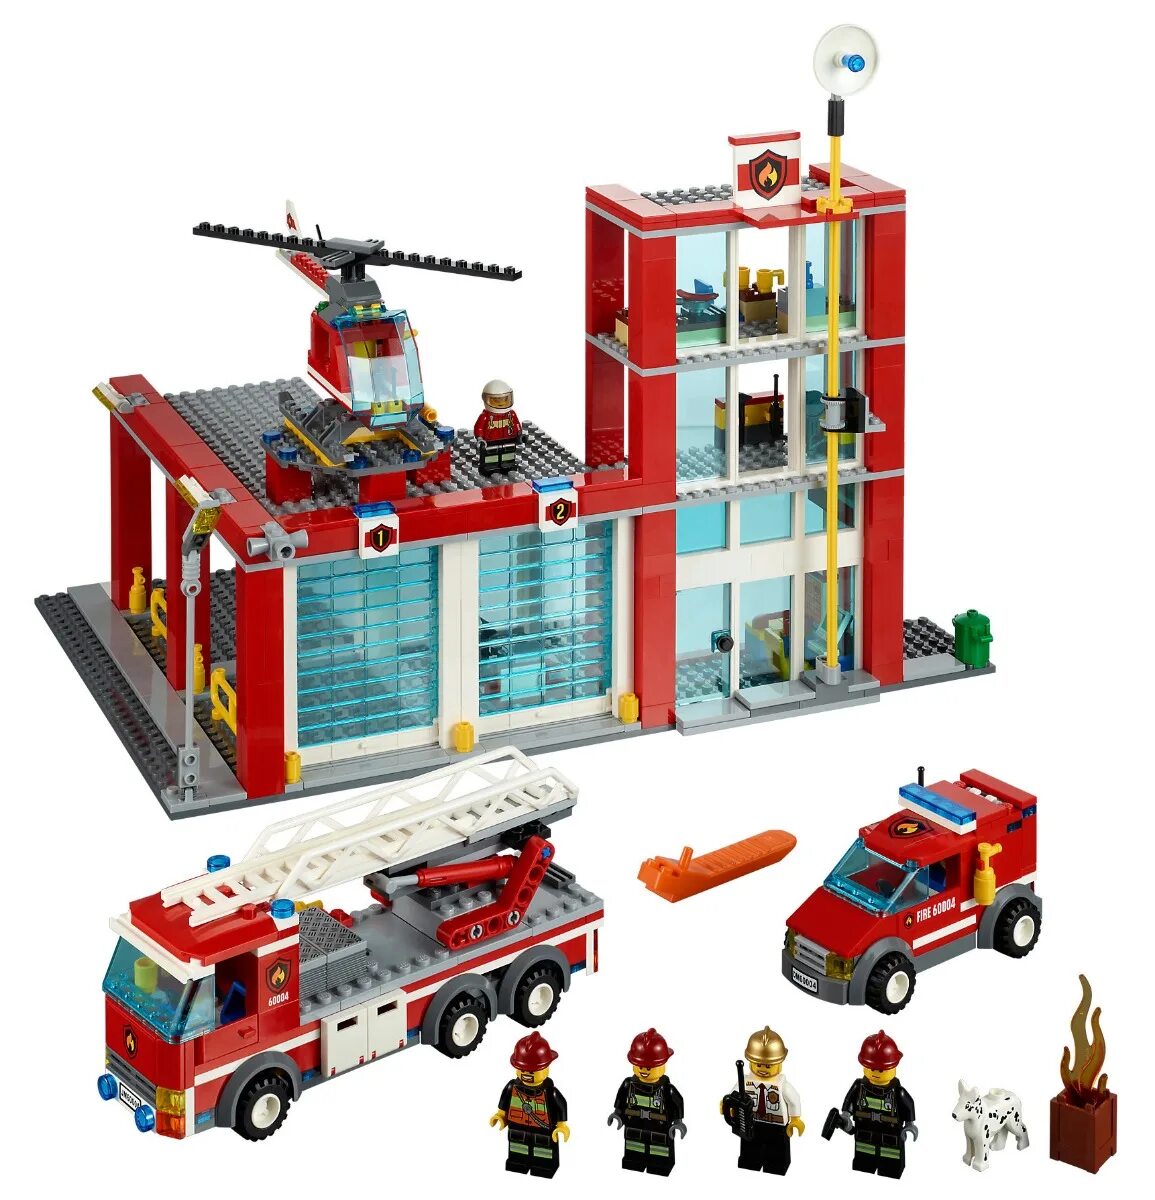 LEGO City 60004. Лего City 60004. LEGO пожарная станция 60004. Лего Сити 60004. Сити пожарная